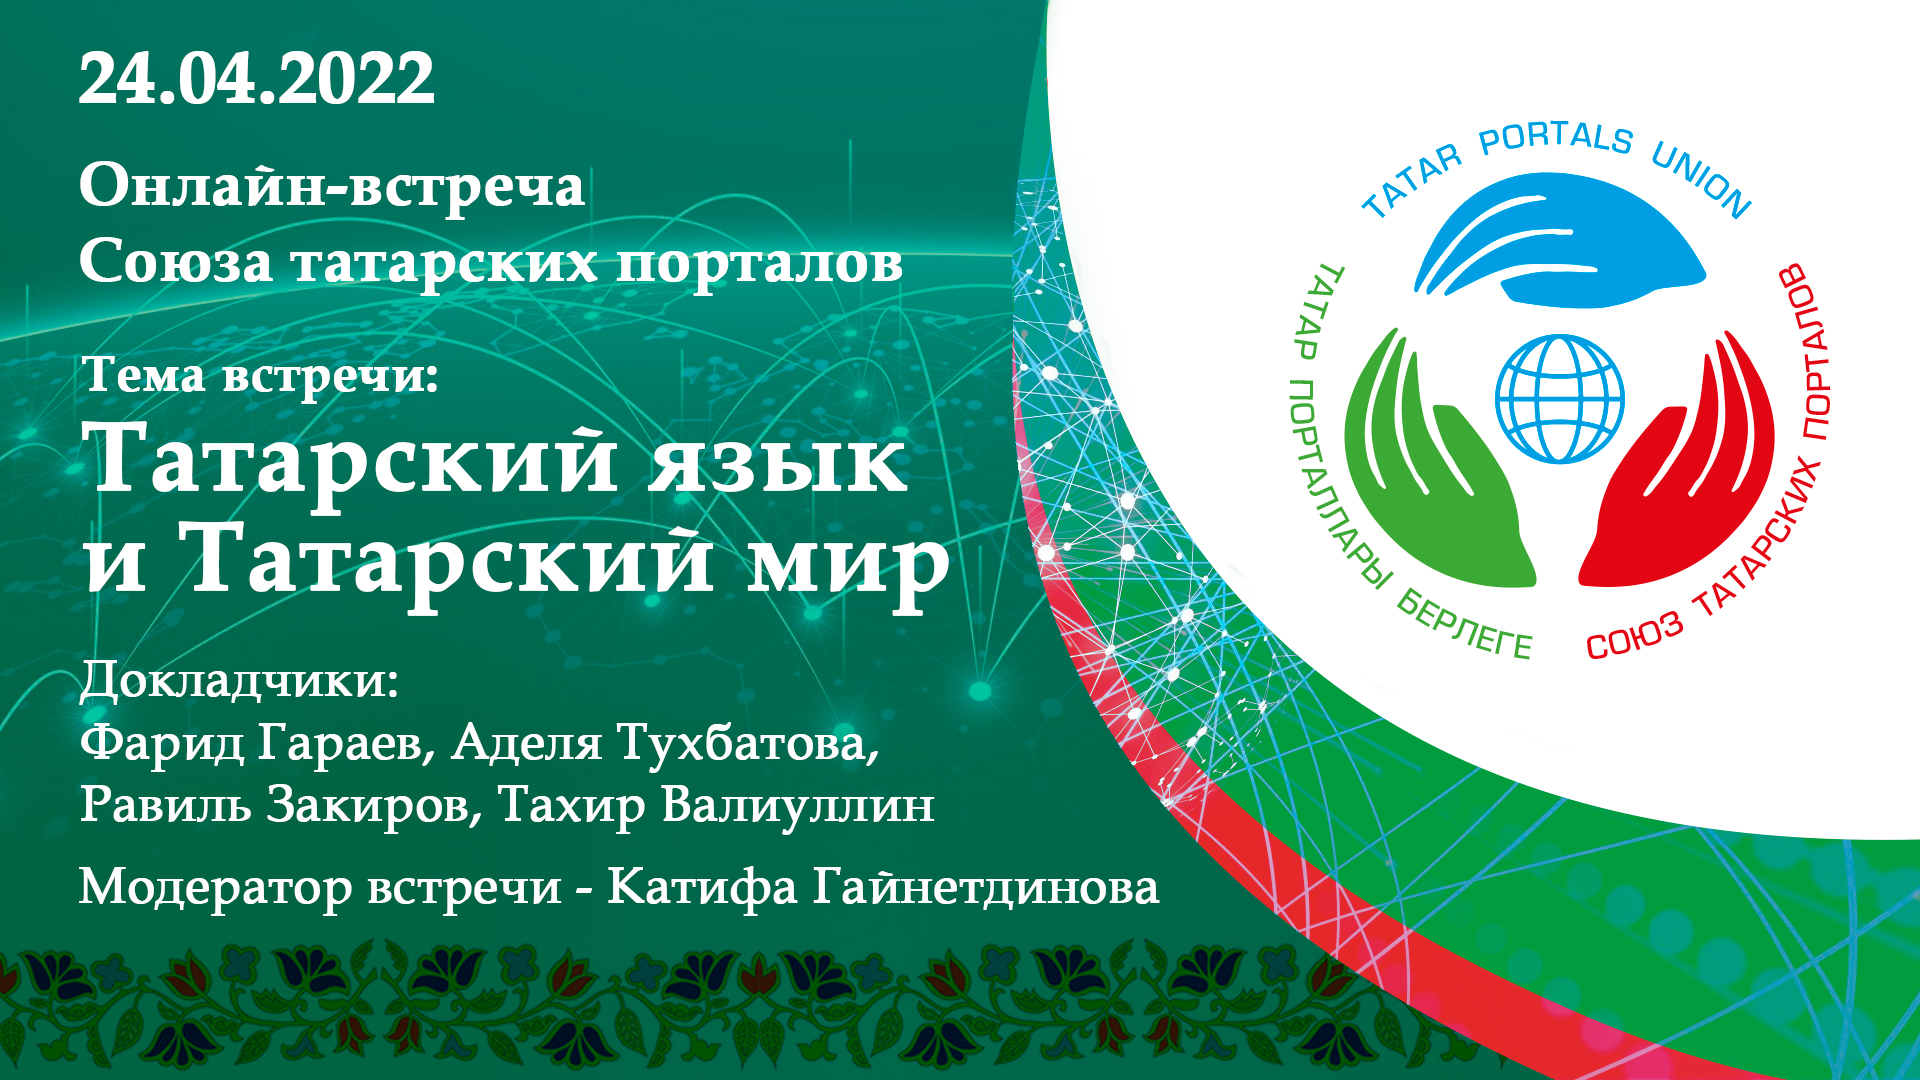 Пост-релиз встречи Союза татарских порталов (24.04.2022)